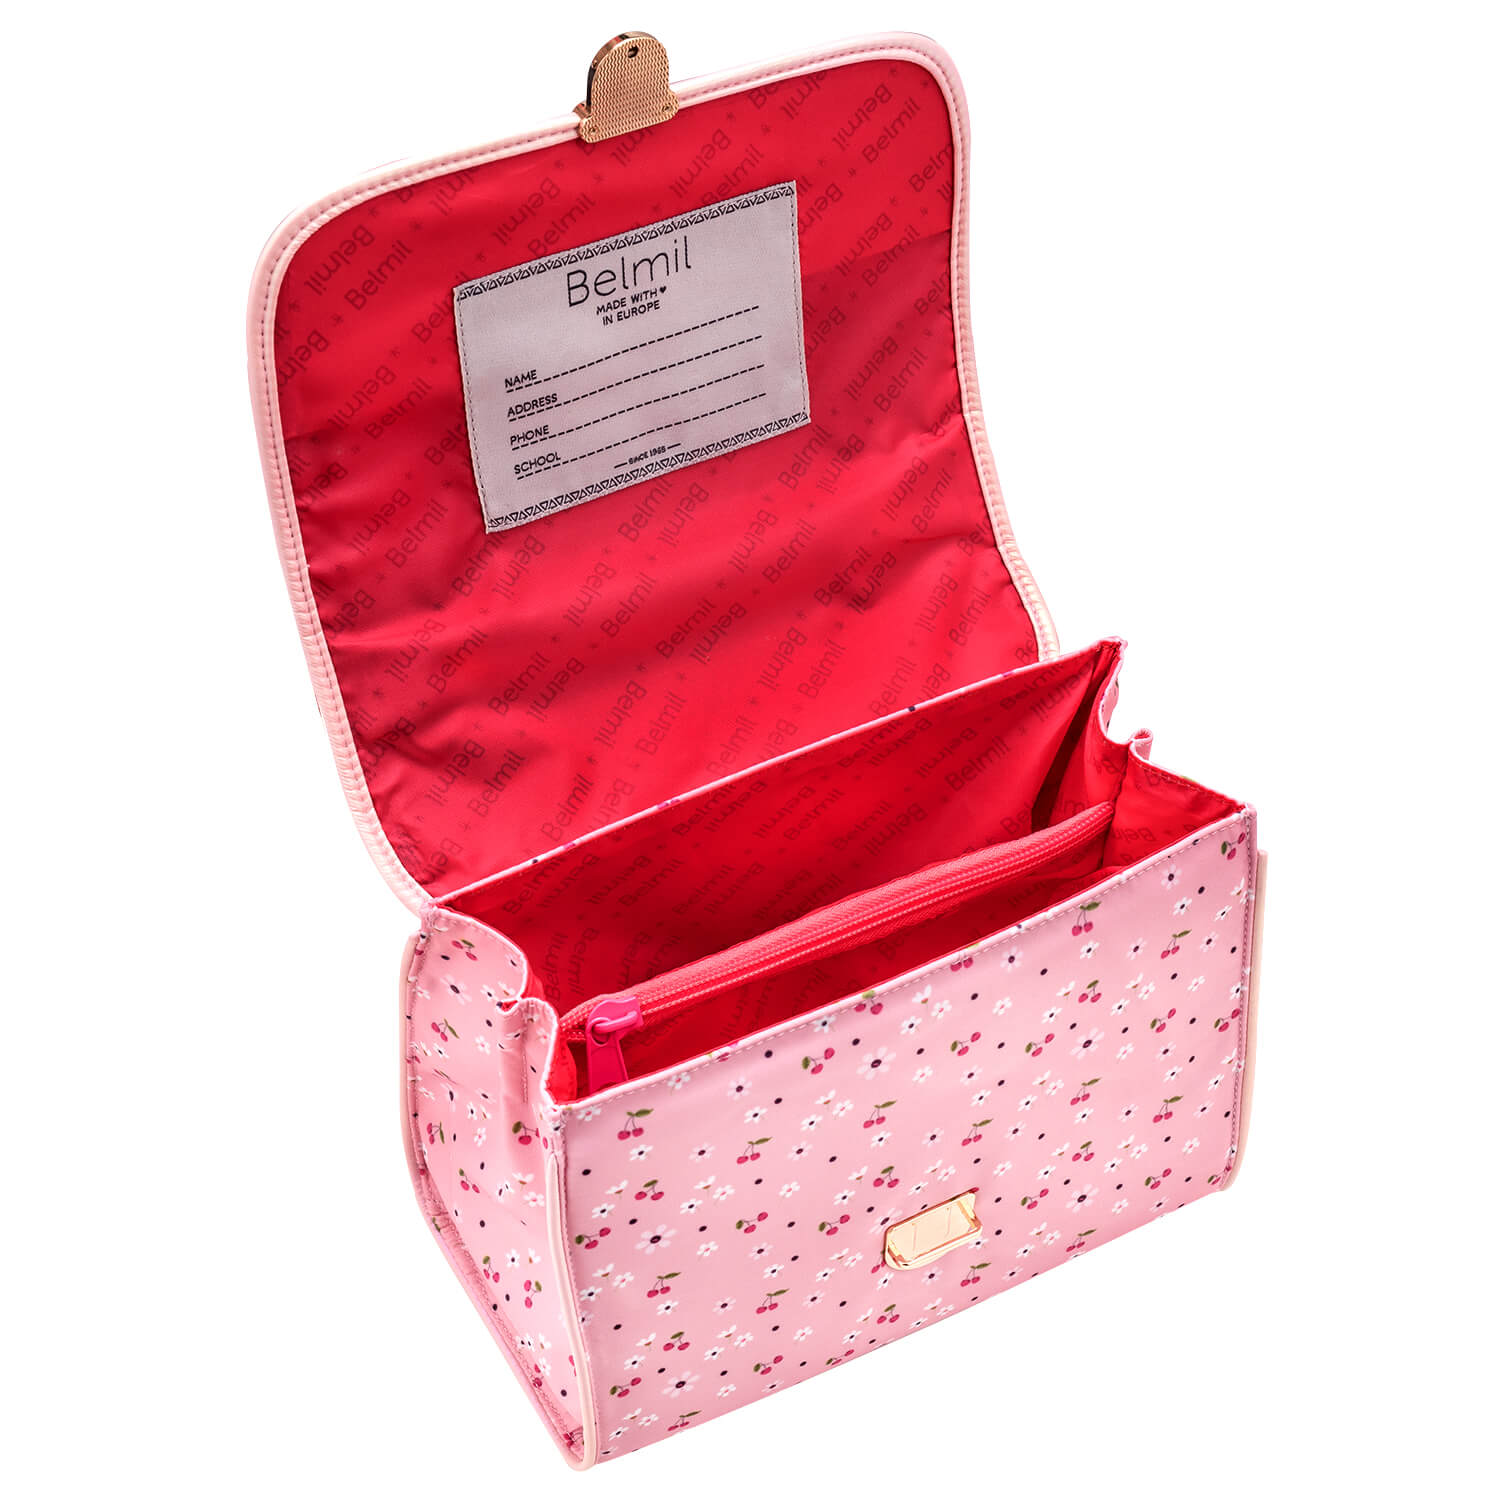 Petite Premium Umhängetasche Cherry Blossom Kinder Tasche